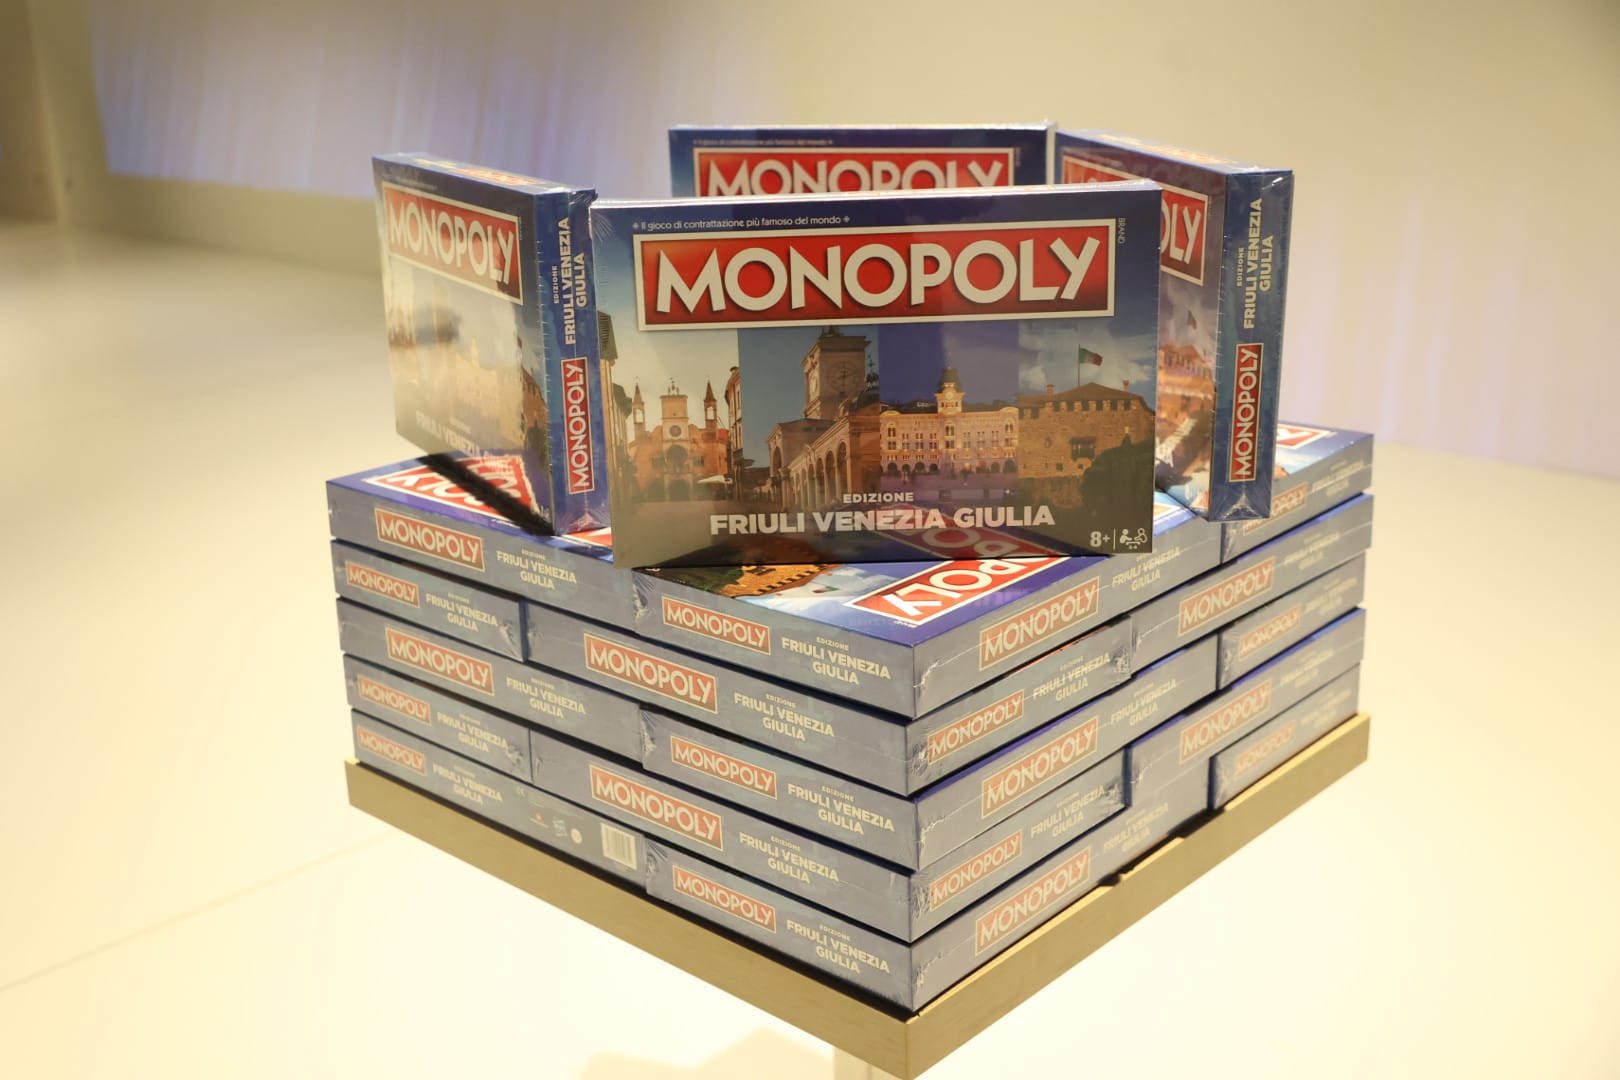 Tiare festeggia 10 anni, nasce il Monopoly a tema Friuli Venezia Giulia